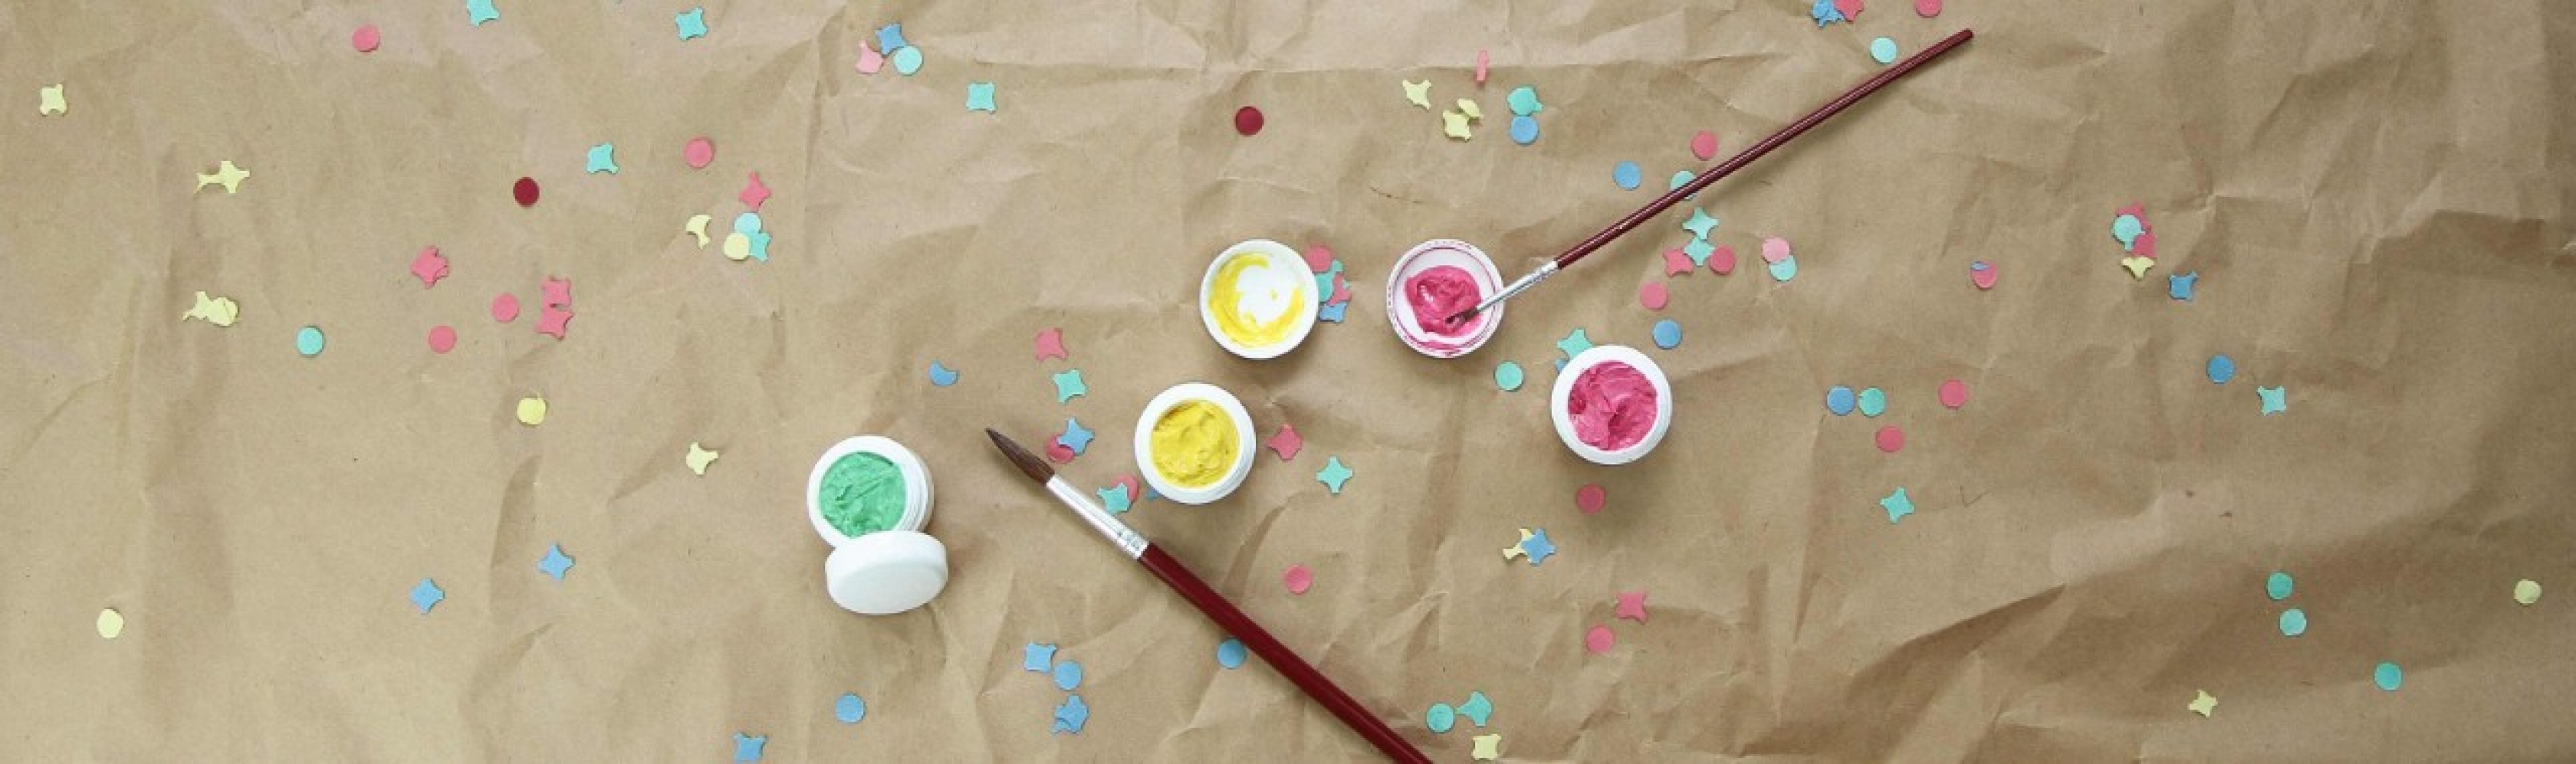 Maquillage et confettis posés sur du papier Kraft